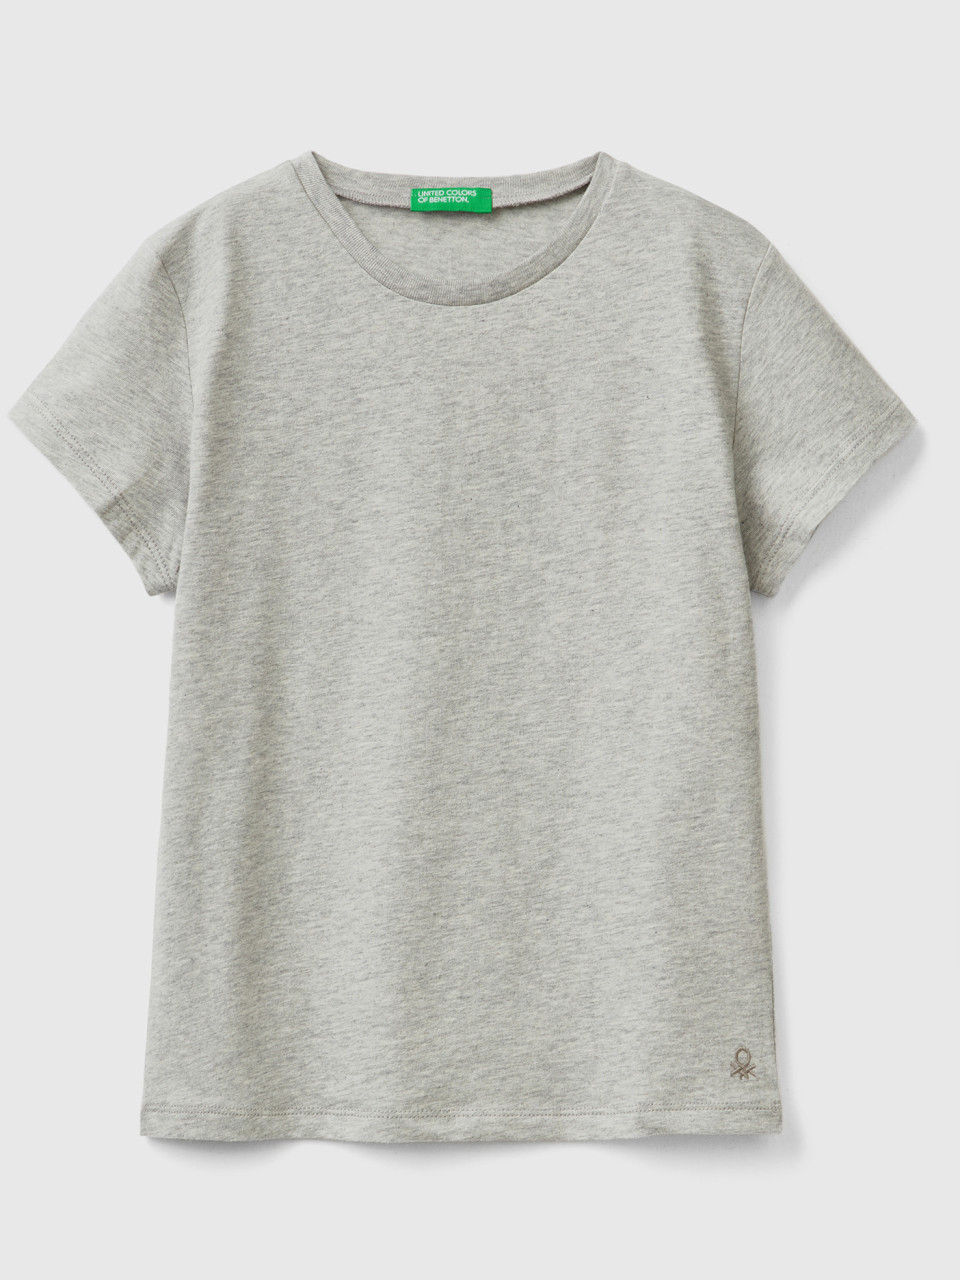 Benetton, Camiseta De 100 % Algodón Orgánico, Gris Claro, Niños